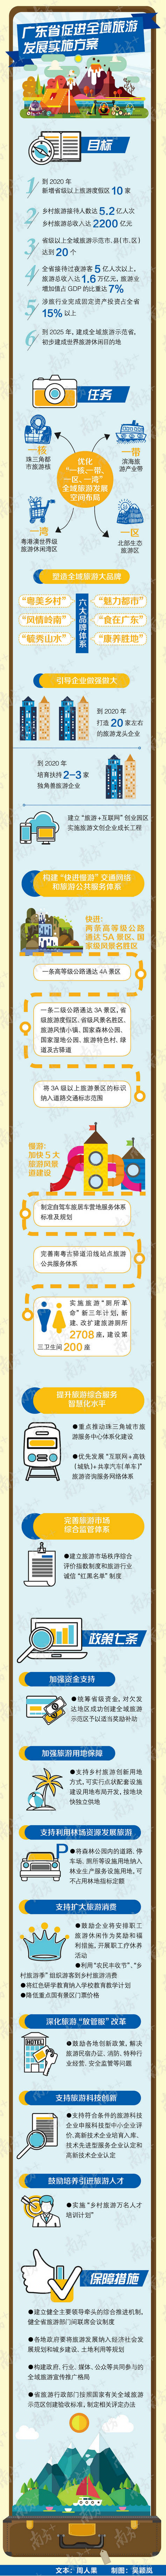 广东鼓励企业把职工旅游作为奖励